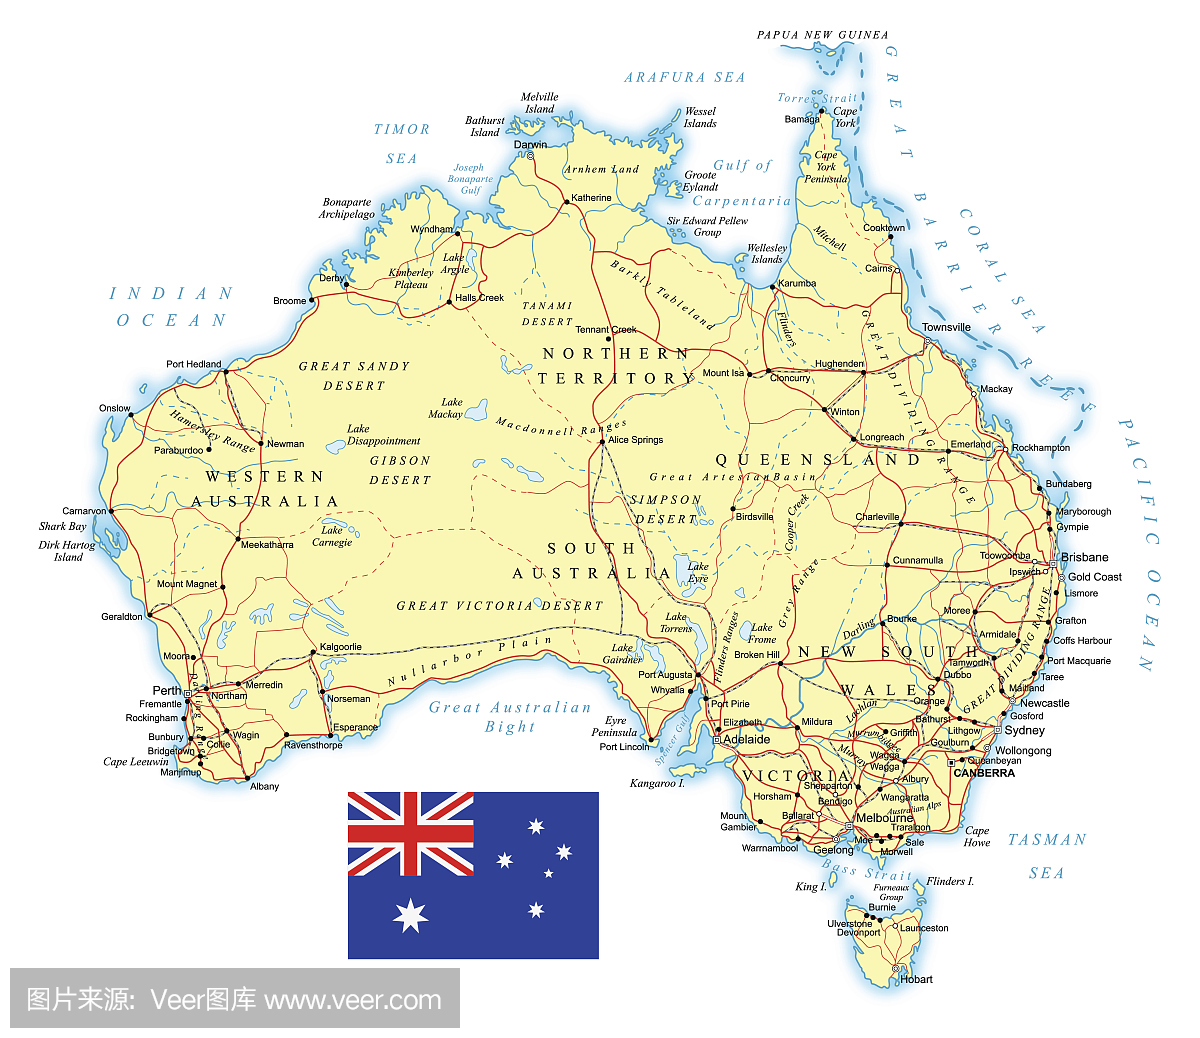 澳大利亚 - 详细的地形图 - 插图